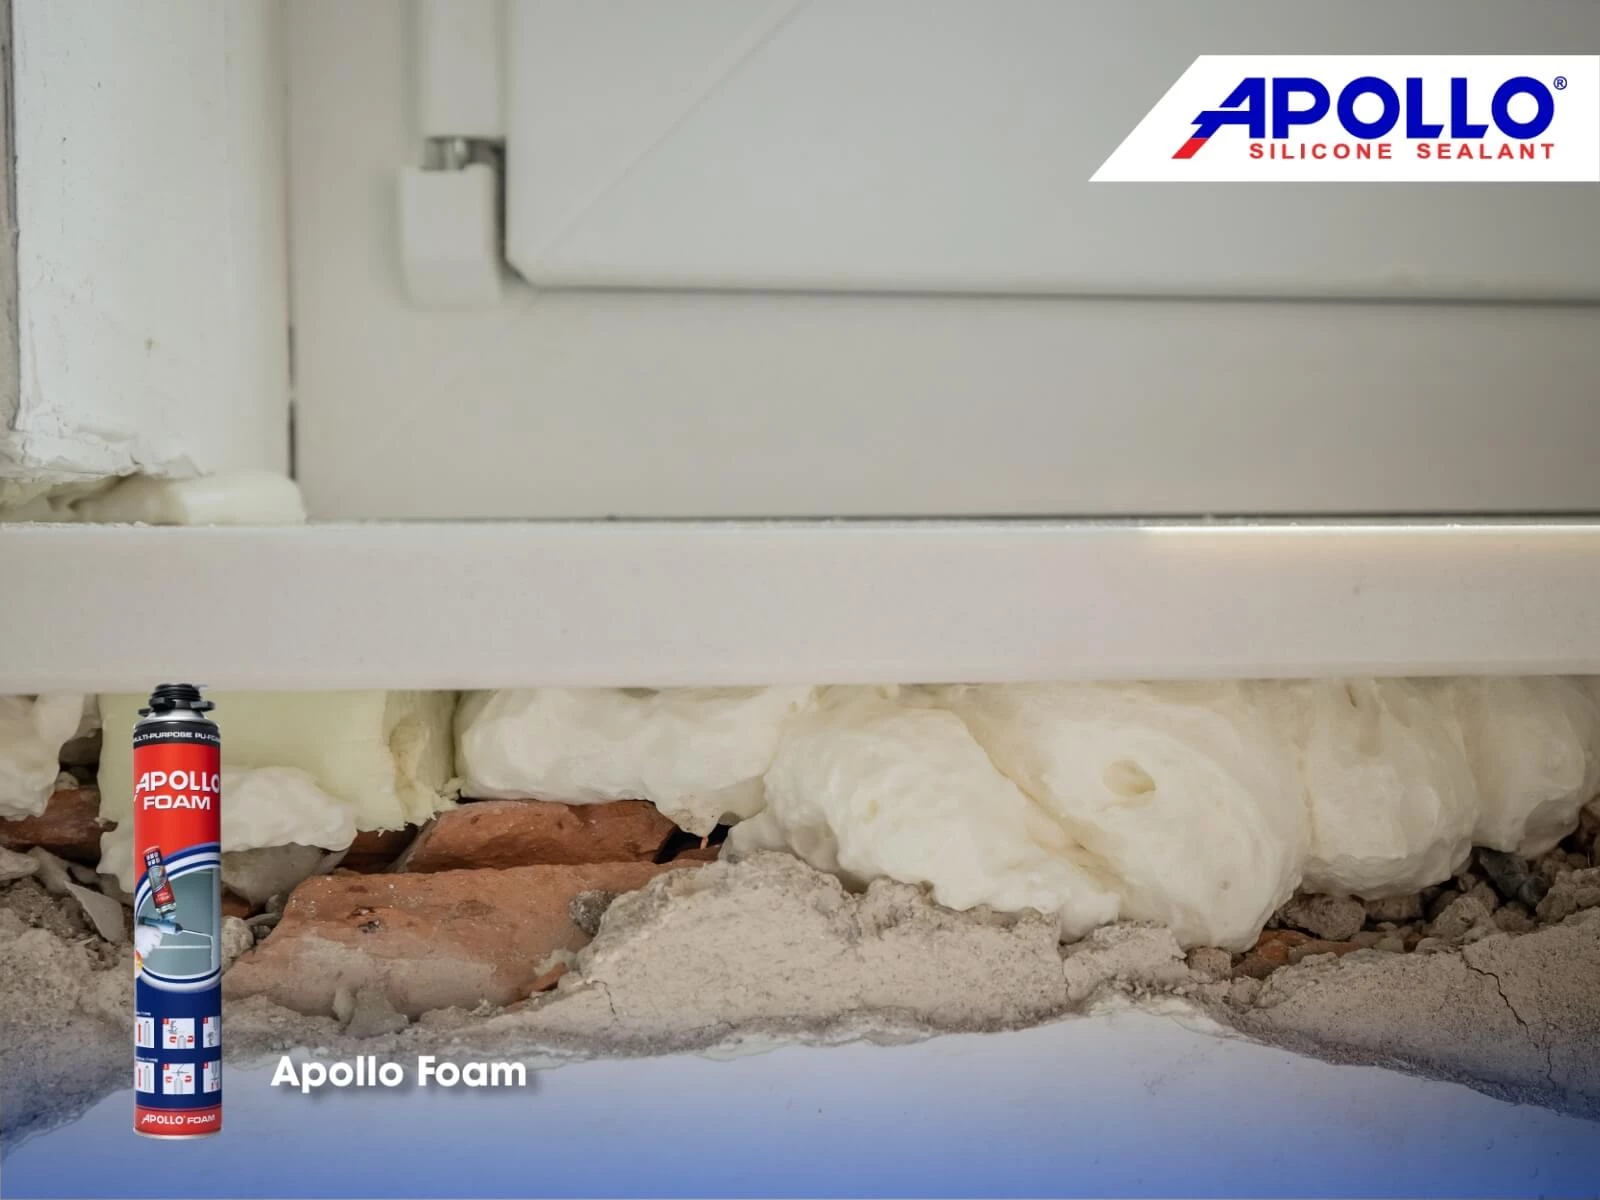 Keo bọt nở Apollo PU Foam có nhiều tính chất vượt trội đem lại khả năng trám trét hiệu quả